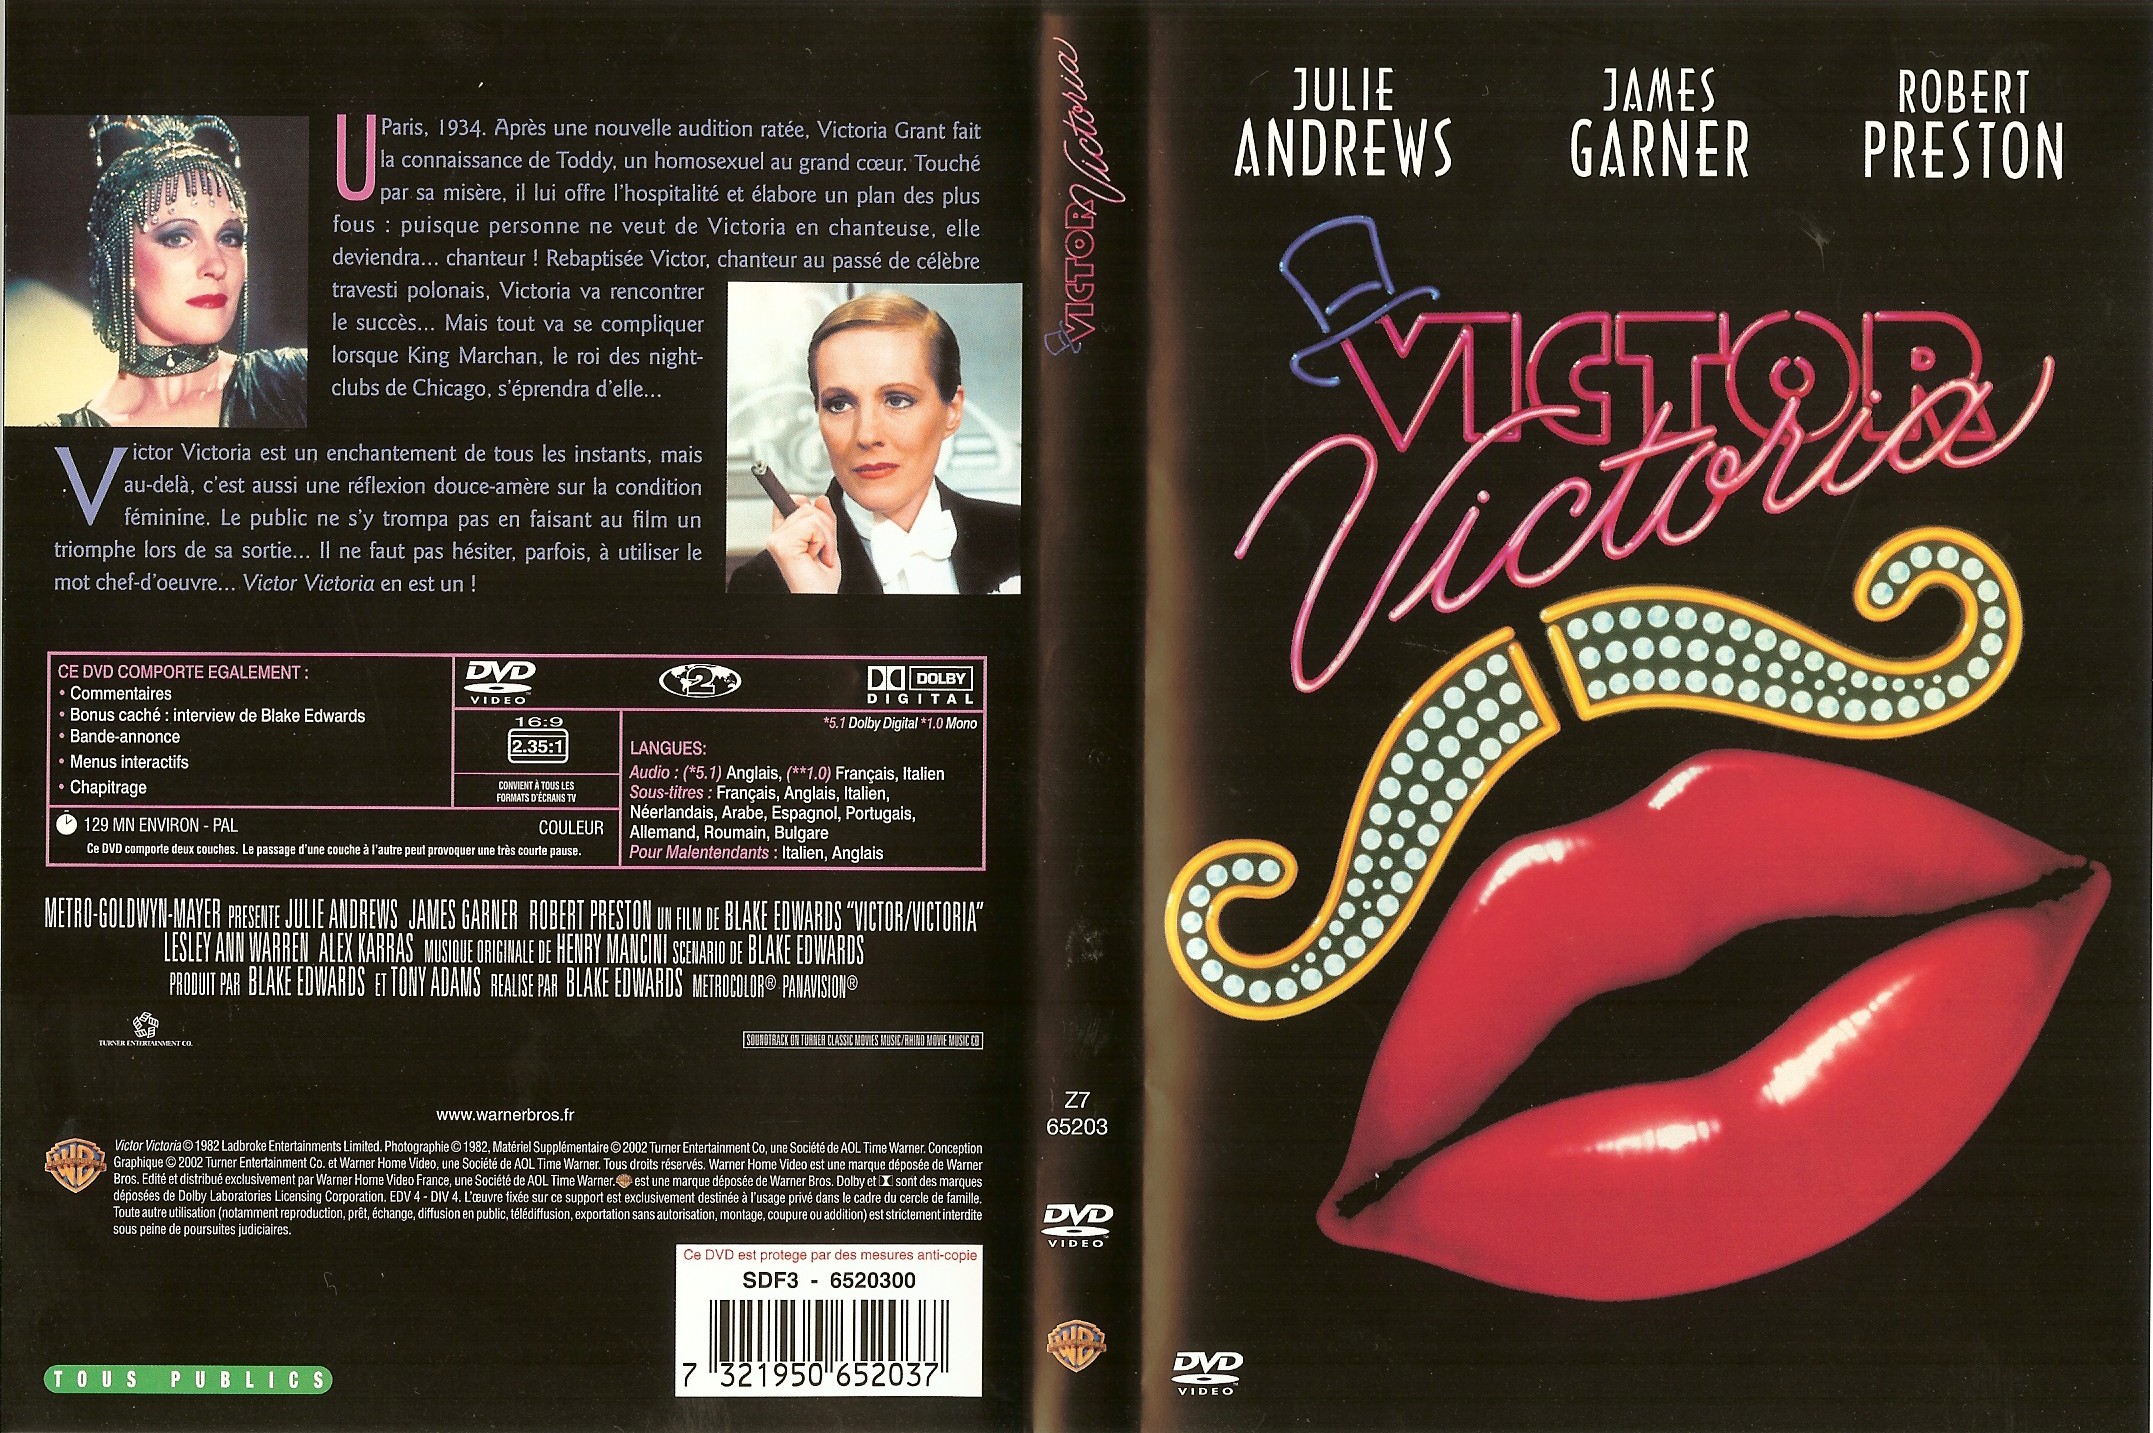 Jaquette DVD Victor et Victoria